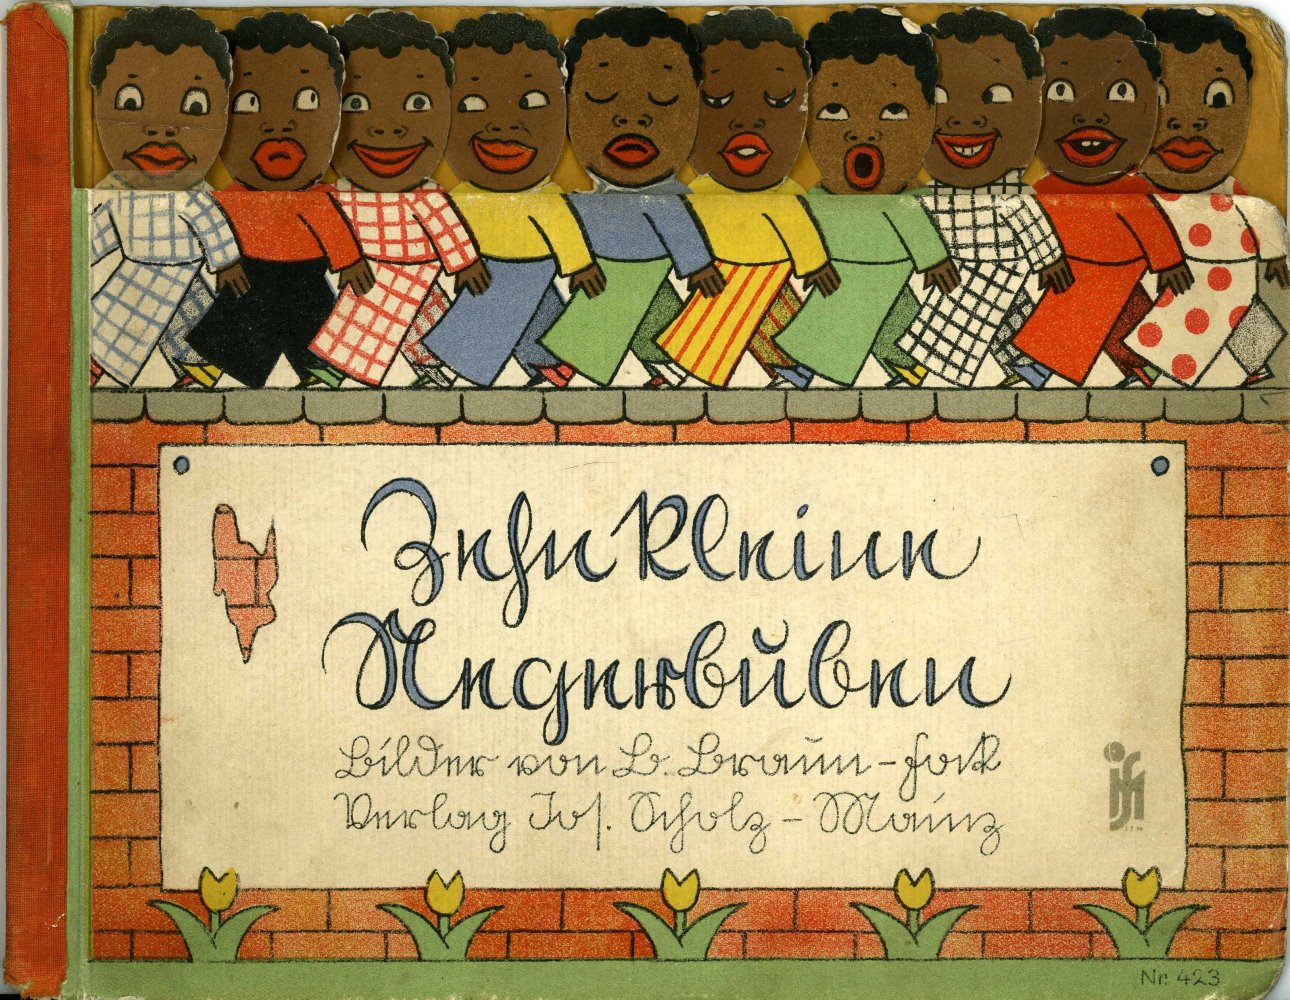 Kinderliederbuch „Zehn kleine Negerbuben“ (oder Negerlein),  Illustrationen auf der Vorder- und Rckseite, um 1930